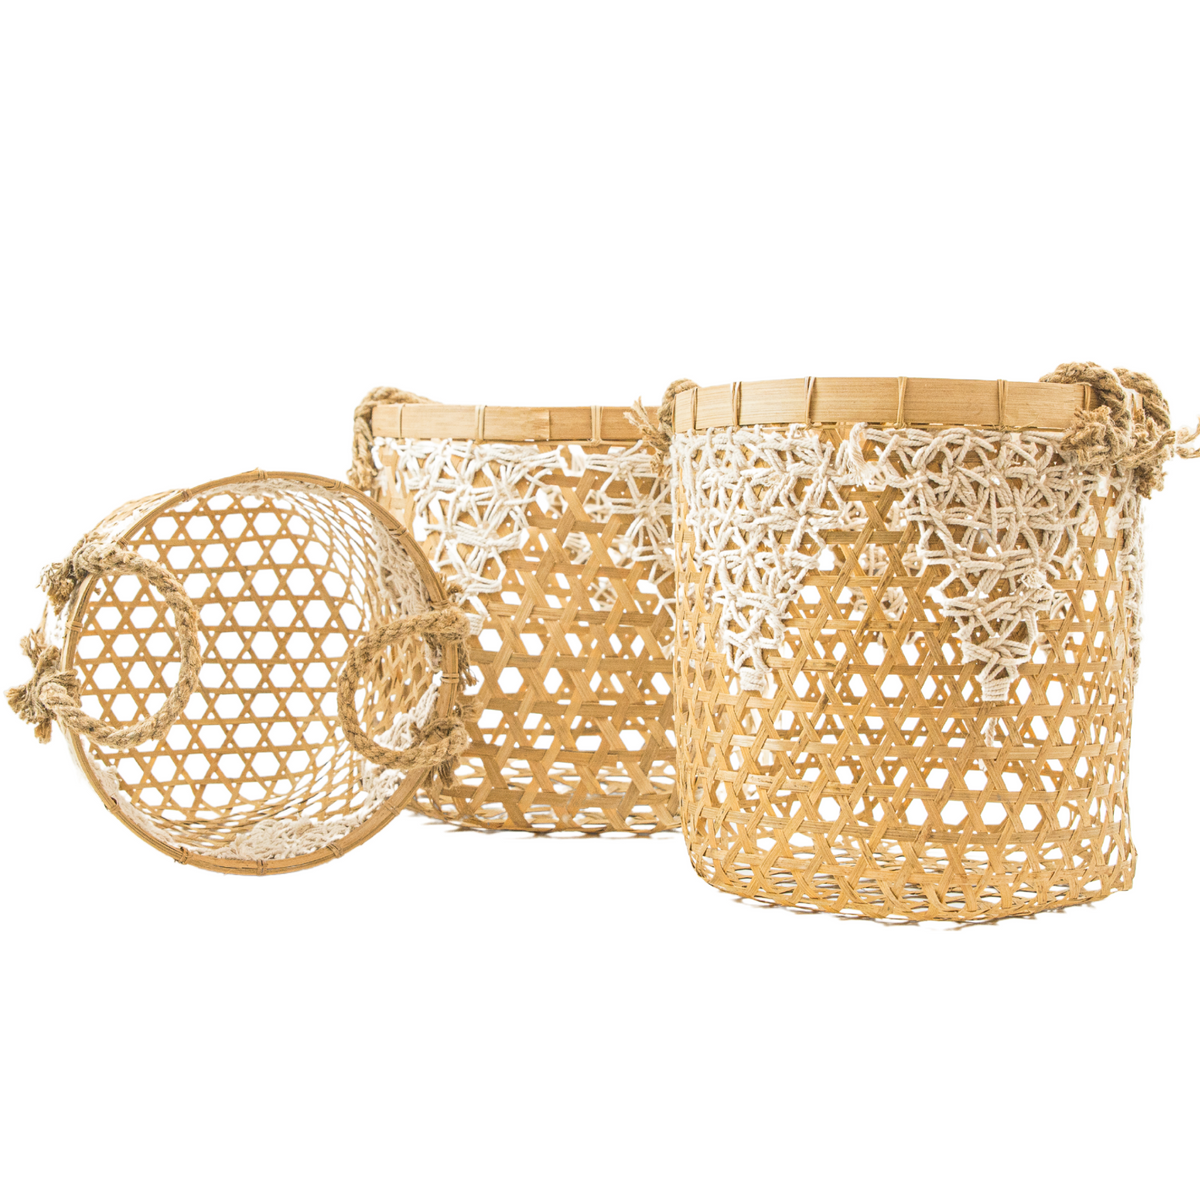 Woven Wicker Baskets - (BSH3009)